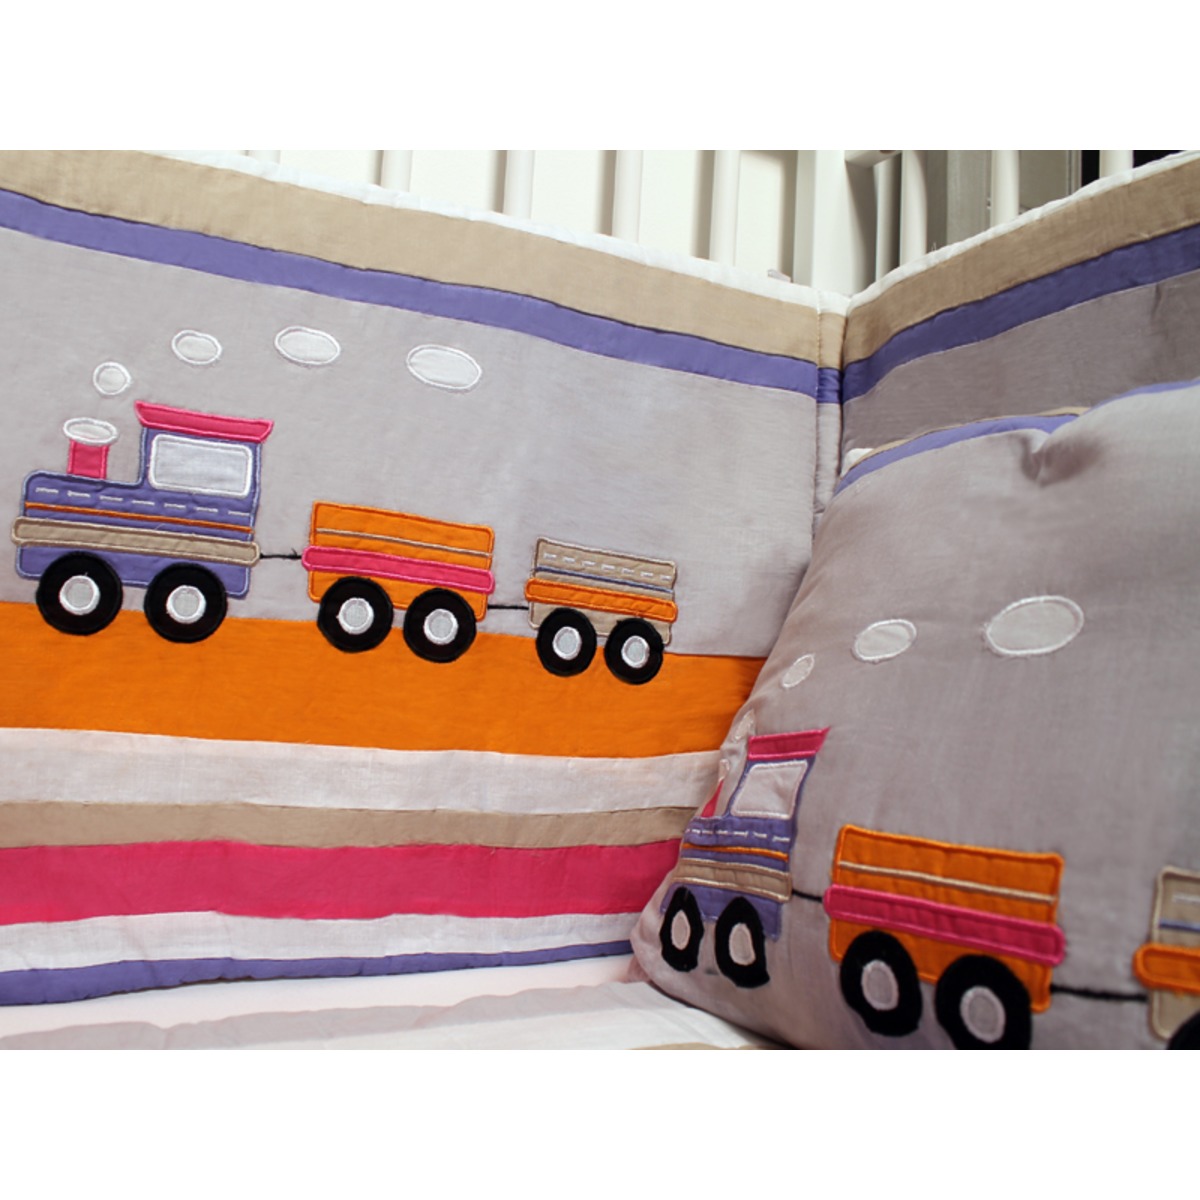 Tour de lit bébé petit train - 40 x 170 cm - Violet parme